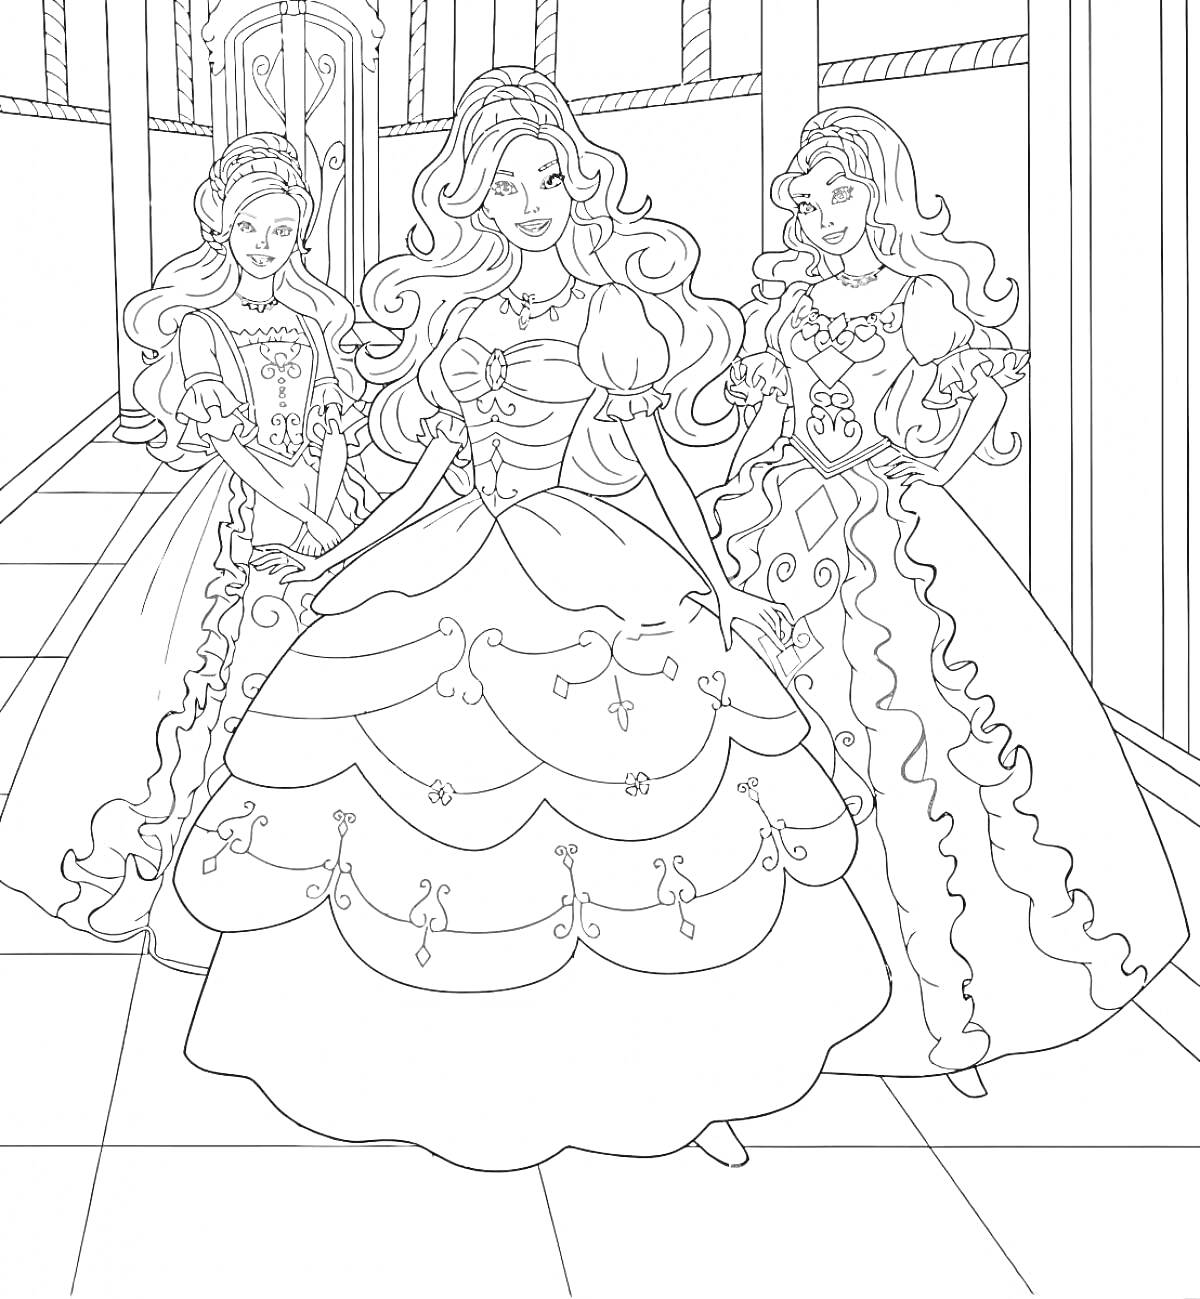 РаскраскаТри куклы Барби в элегантных платьях в коридоре